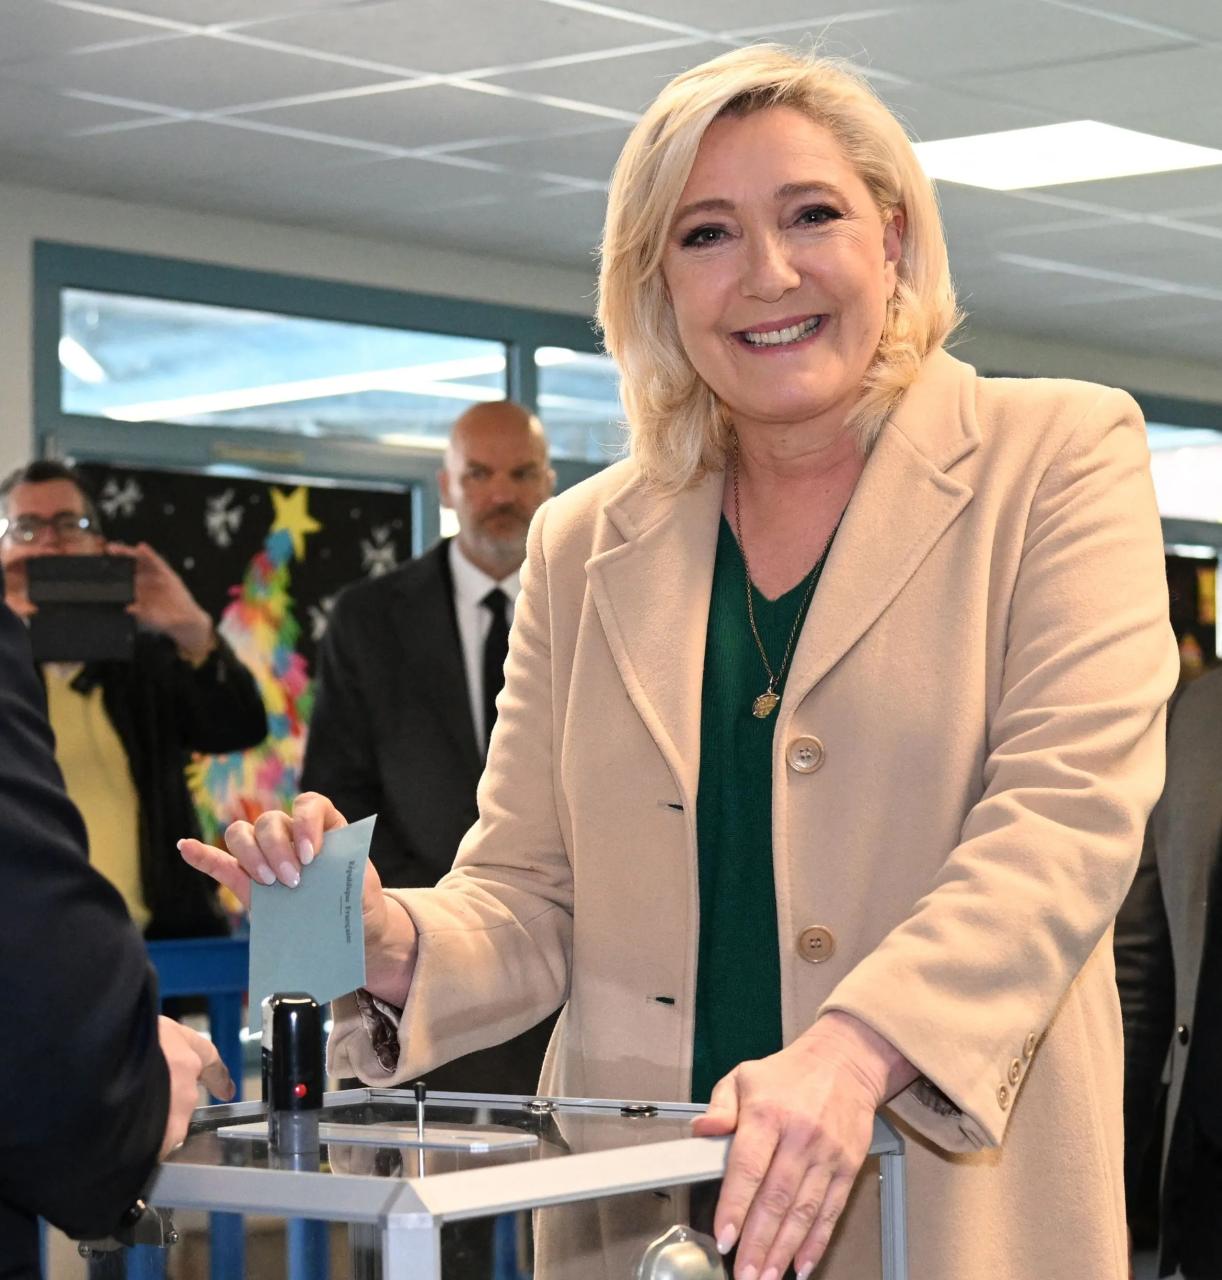 Marine Le Pen, candidata presidencial del partido de extrema derecha francés Rassemblement National, dio su voto hoy